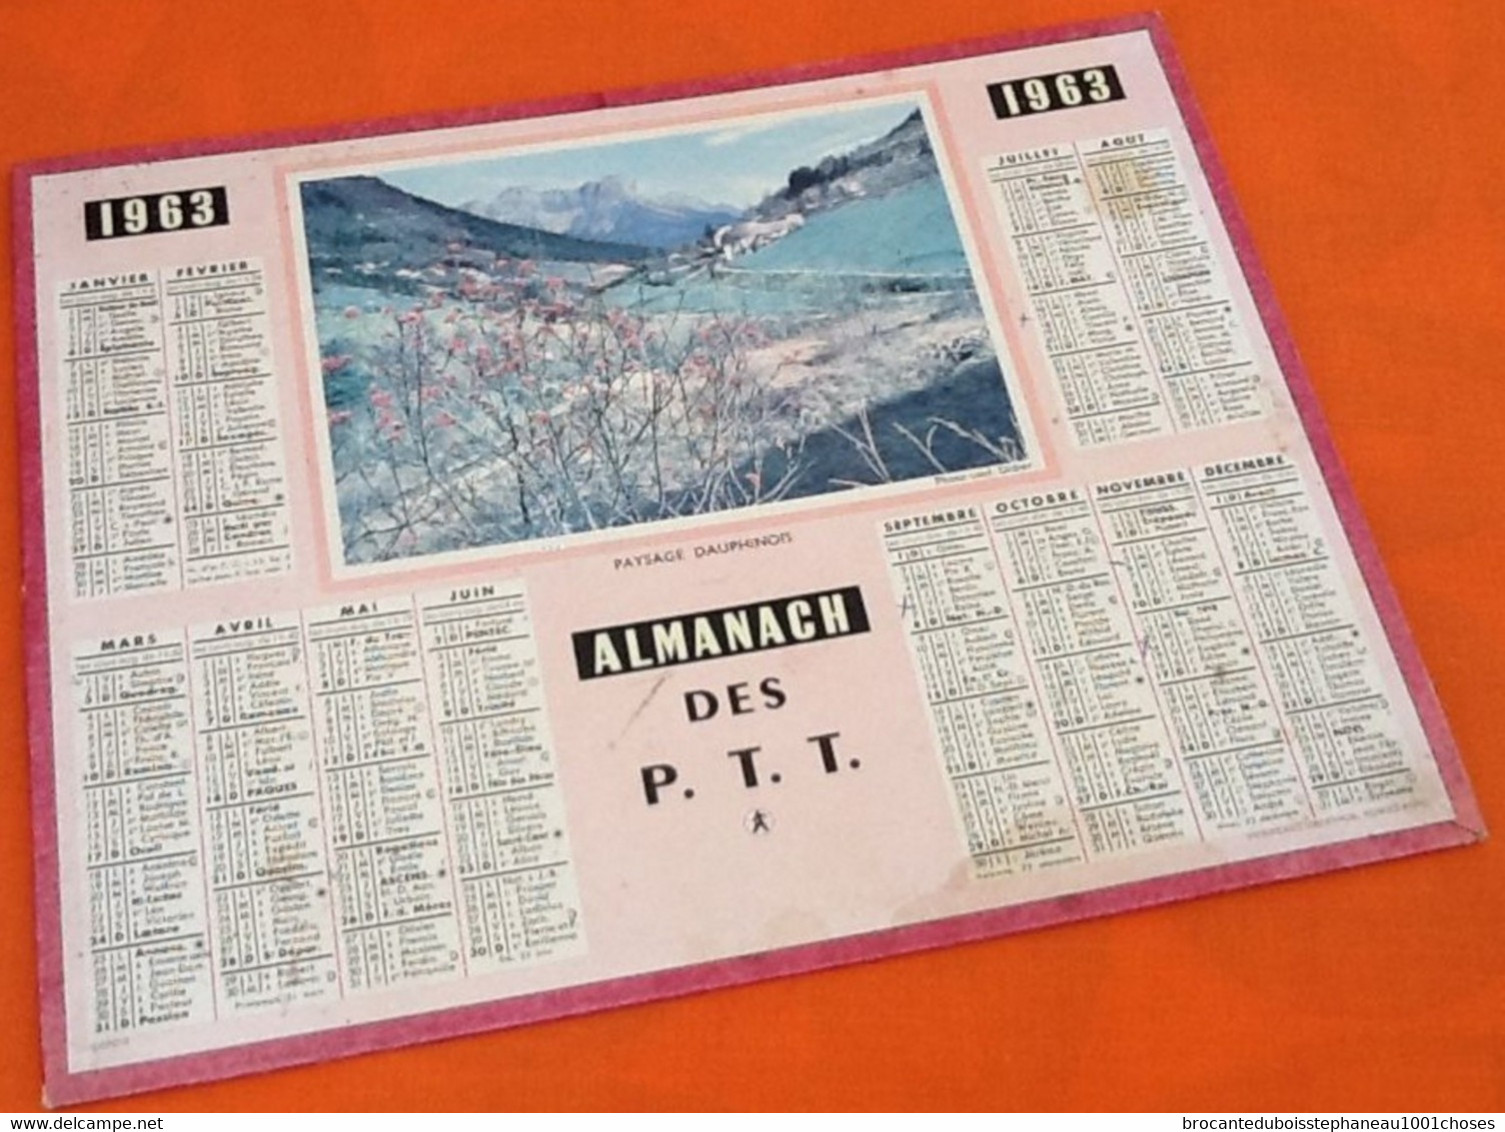 Almanach Des P.T.T (1963) Paysage Dauphinois Imprimerie Oberthur Rennes-Paris - Petit Format : 1961-70